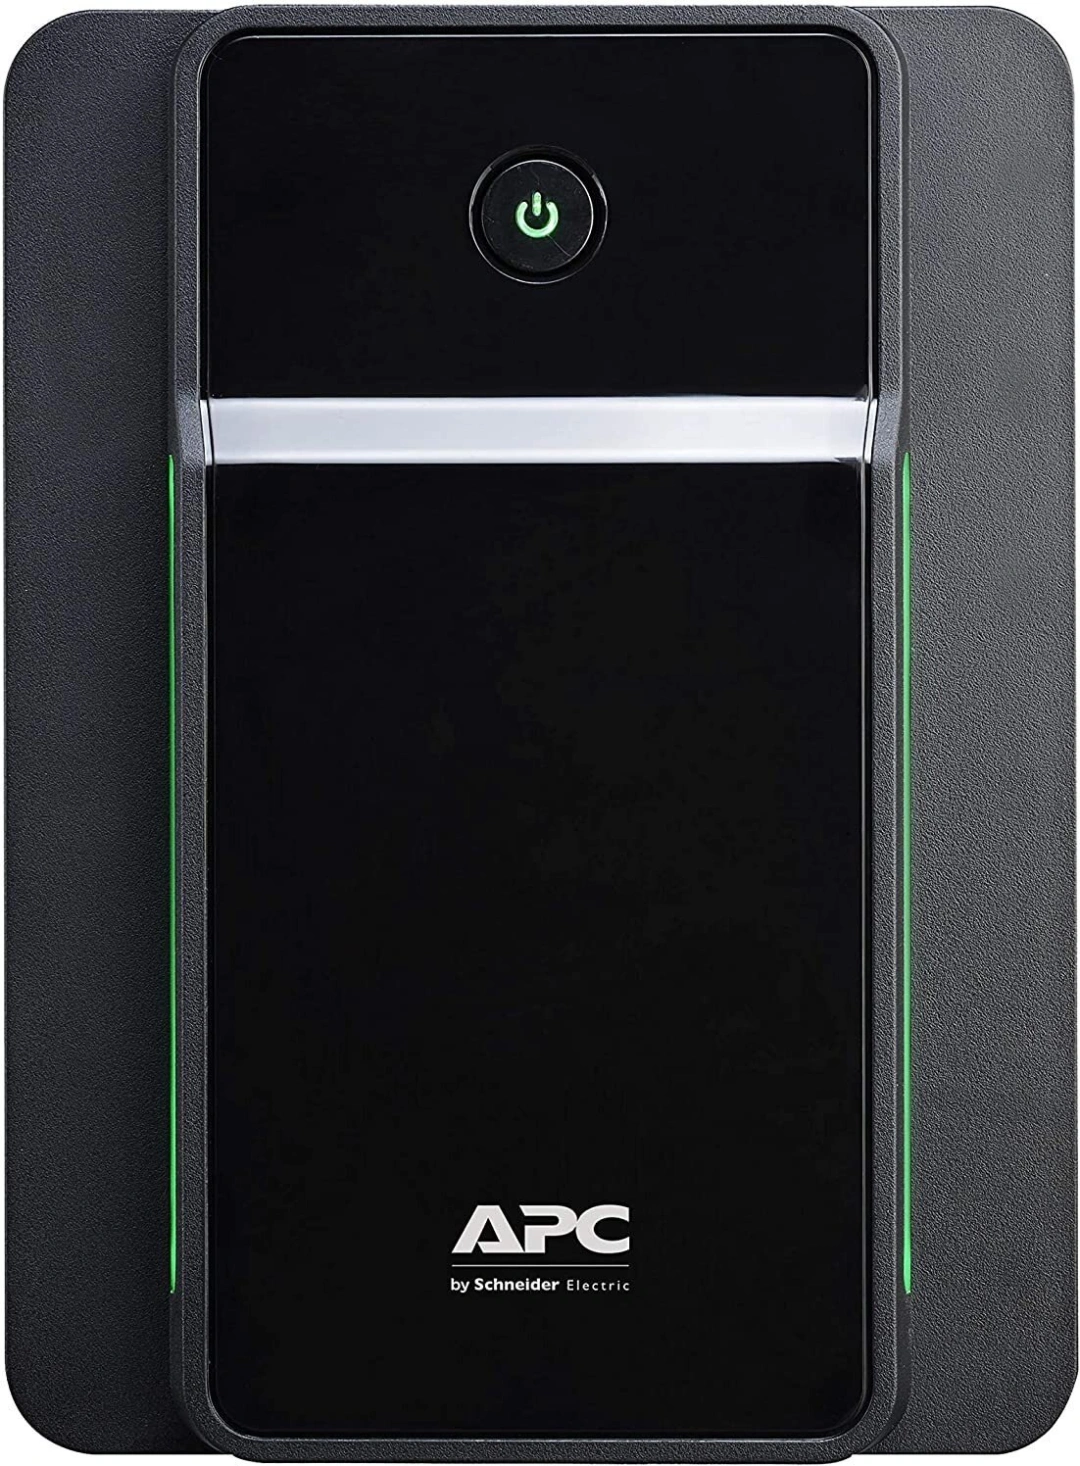 APC Back-UPS 2200VA